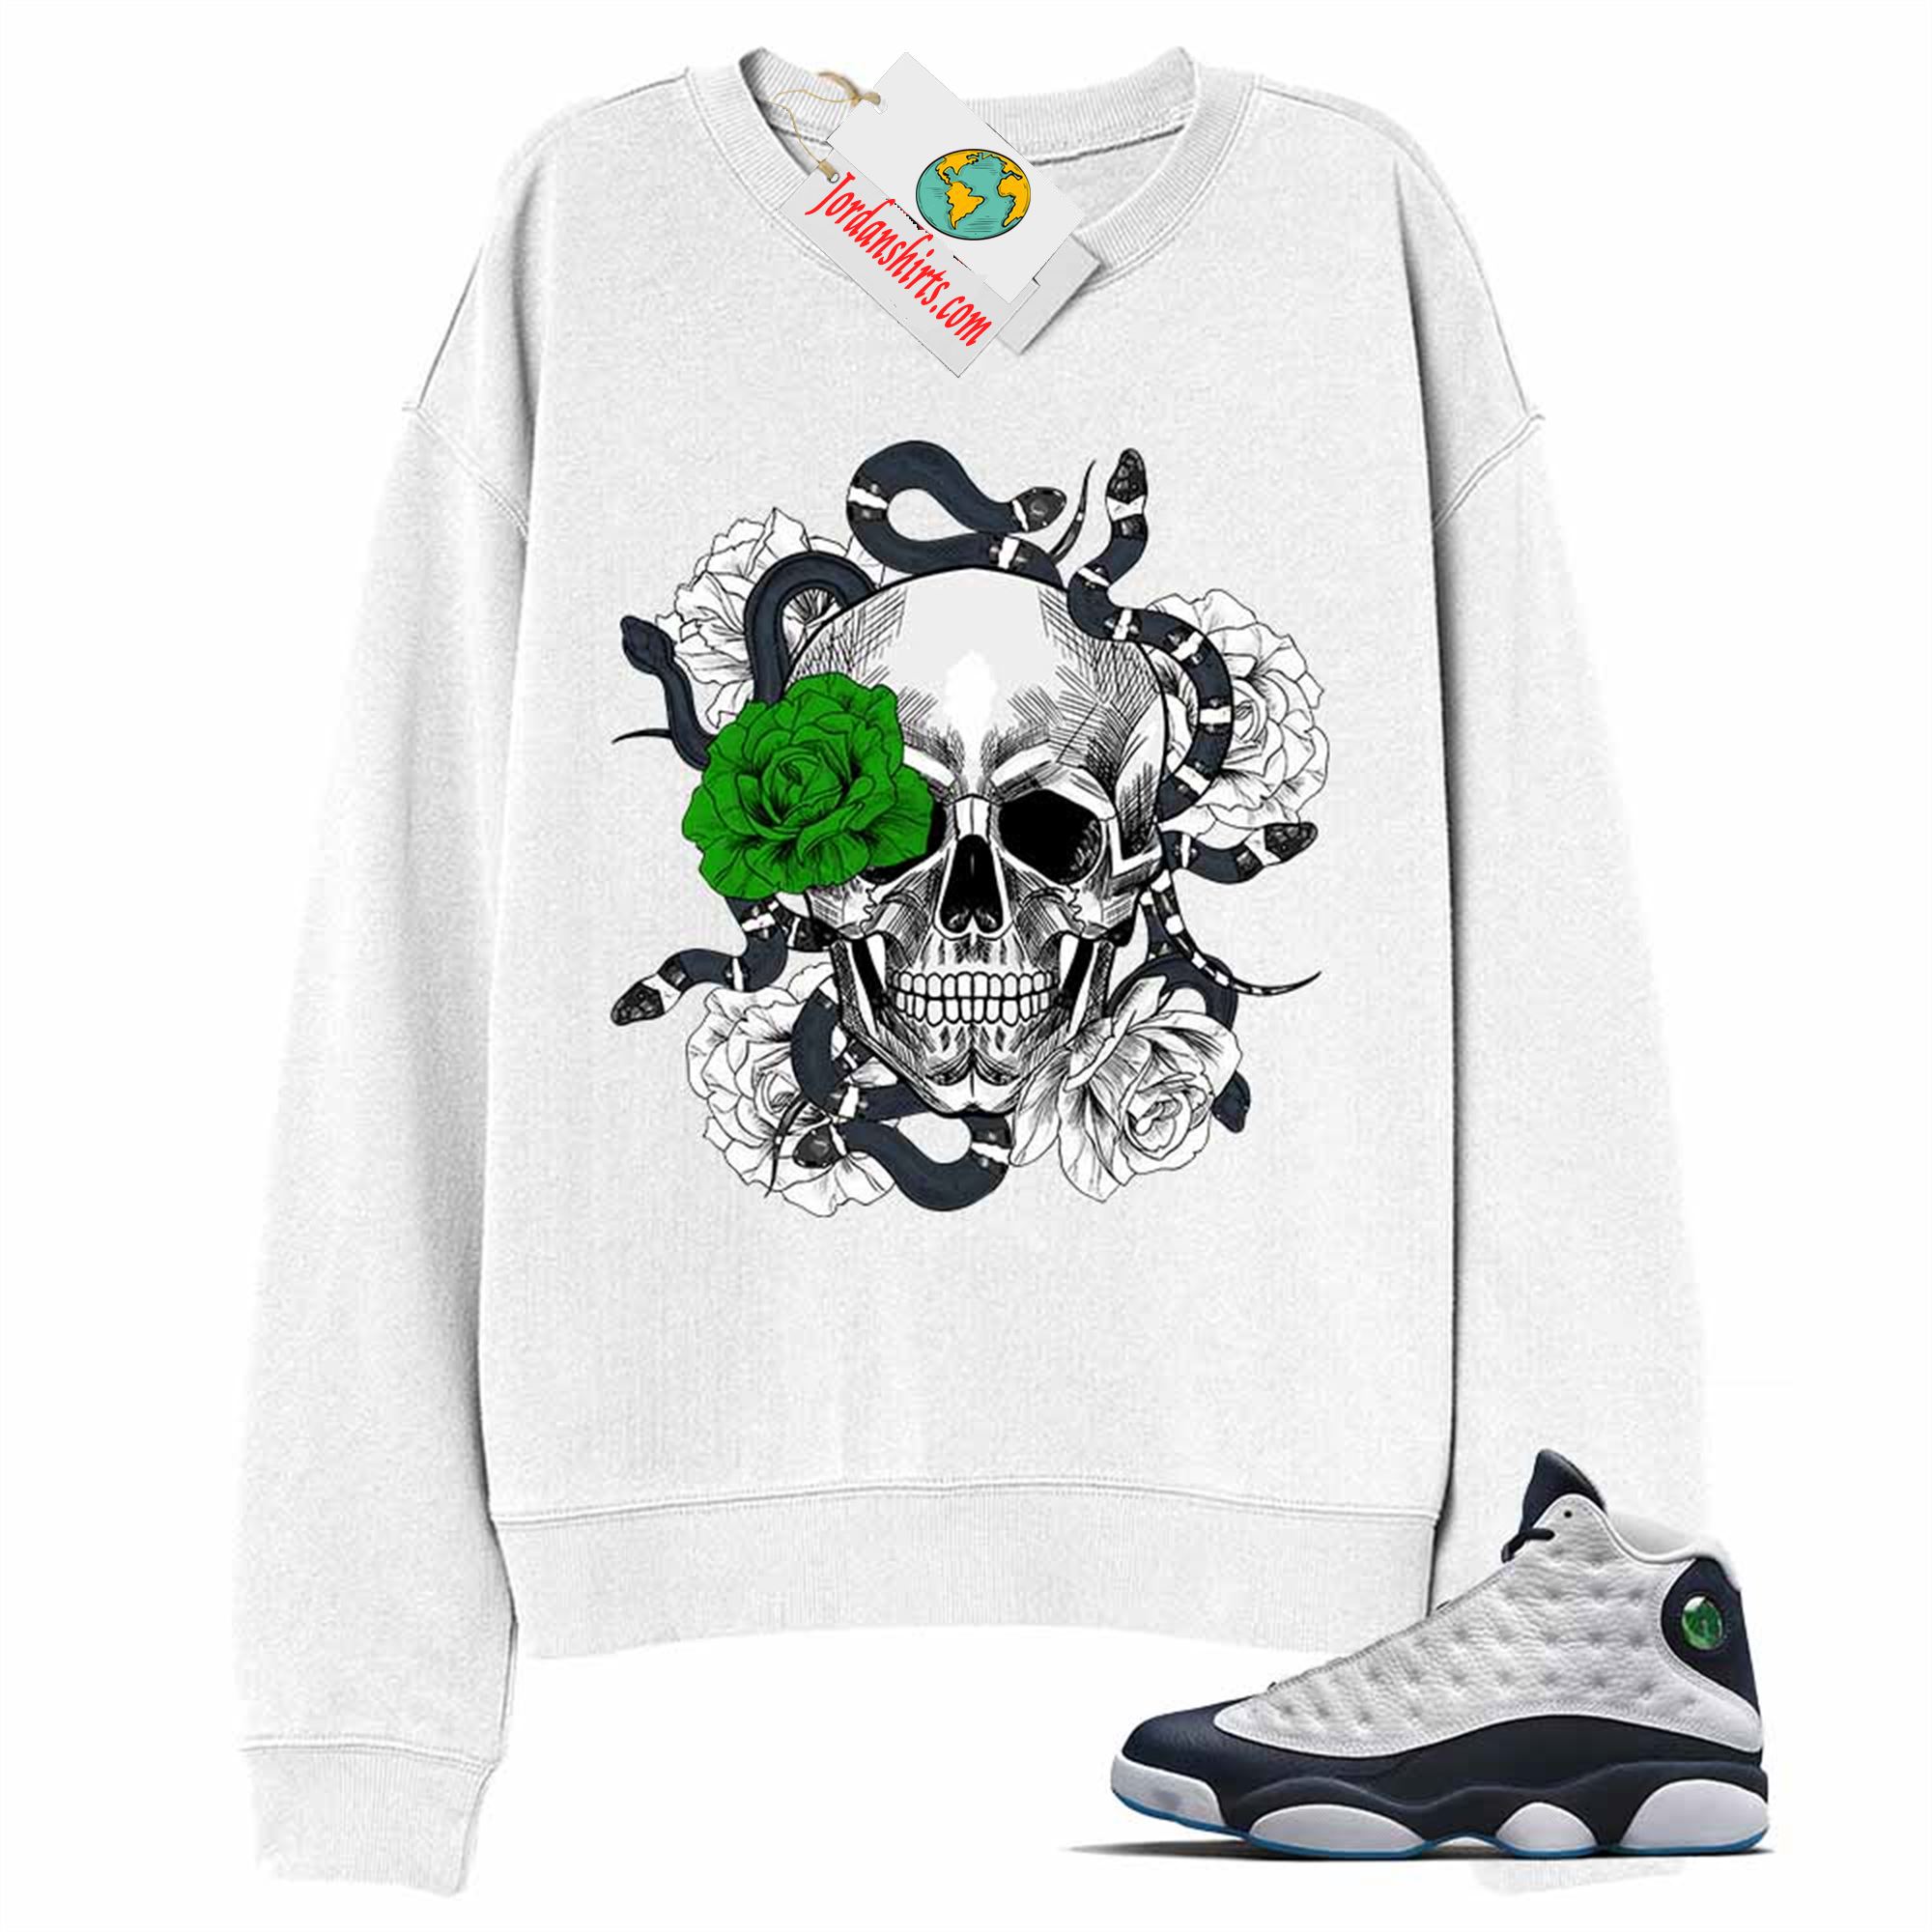 Jordan 13 Sweatshirt, Snake Skull Rose White Sweatshirt Air Jordan 13 Obsidian 13s Plus Size Up To 5xl